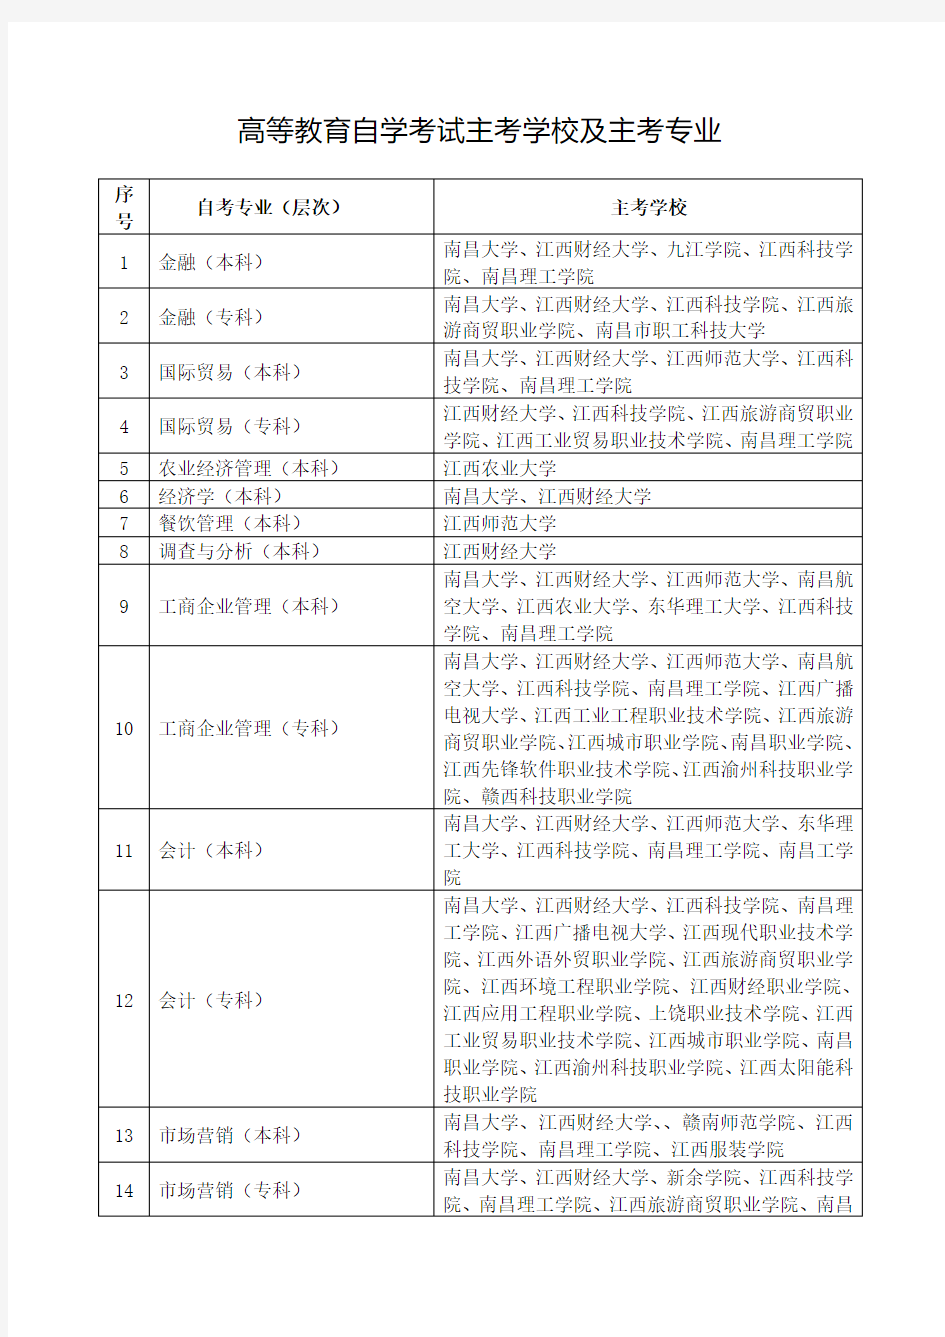 2014年江西省高等教育自学考试主考学校及主考专业